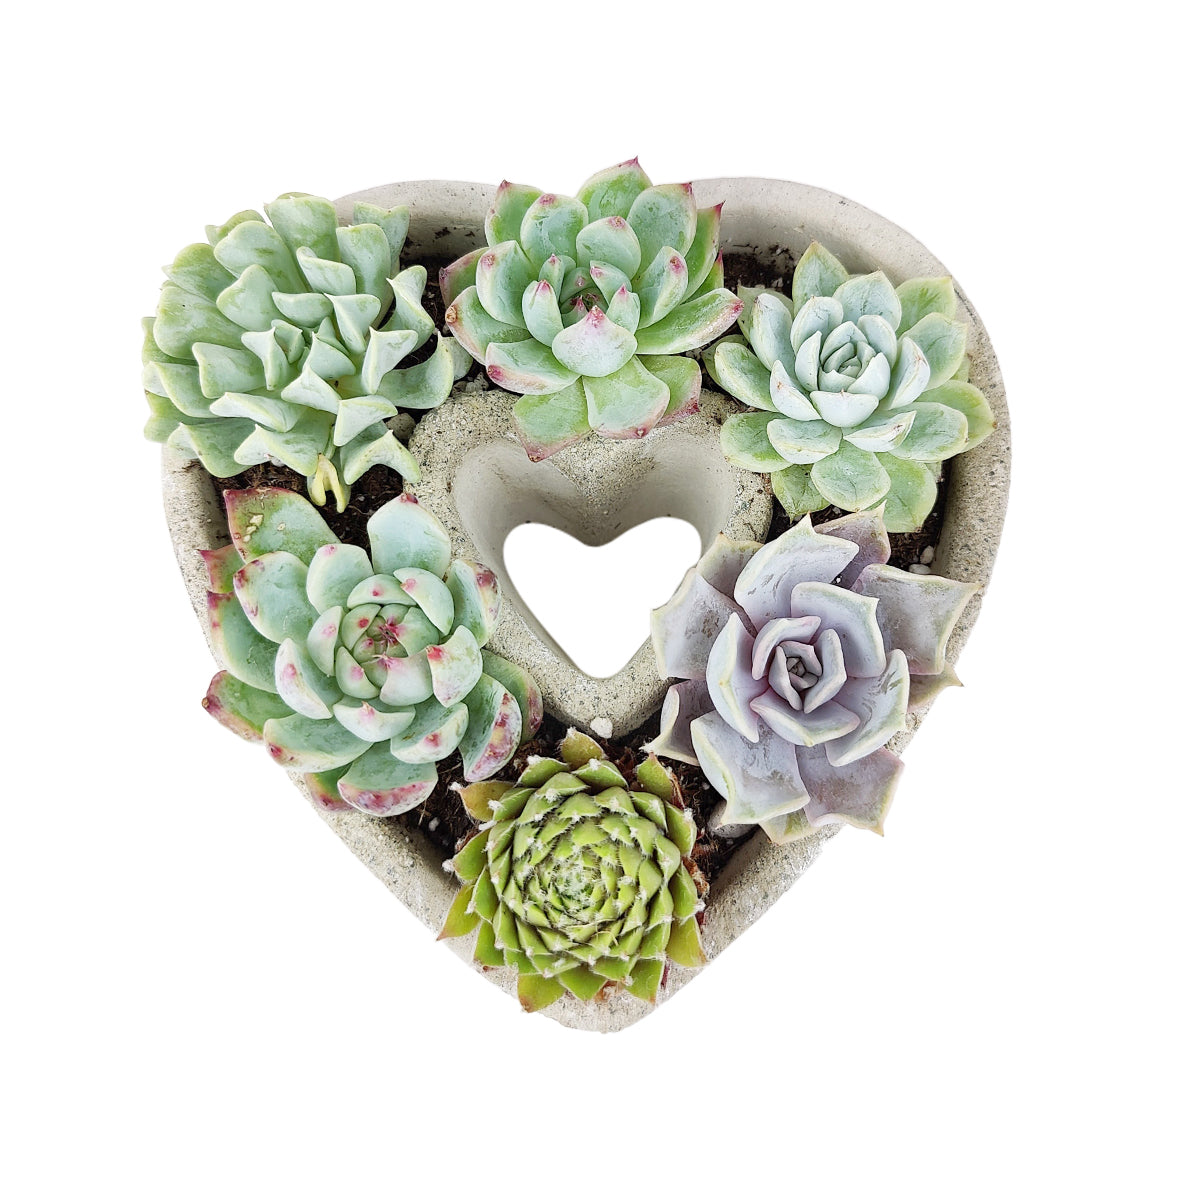 7 inch Succulent Heart Arrangement for sale, Succulent Gift Ideas, Live Succulent Arrangement for Home Decor Ideas